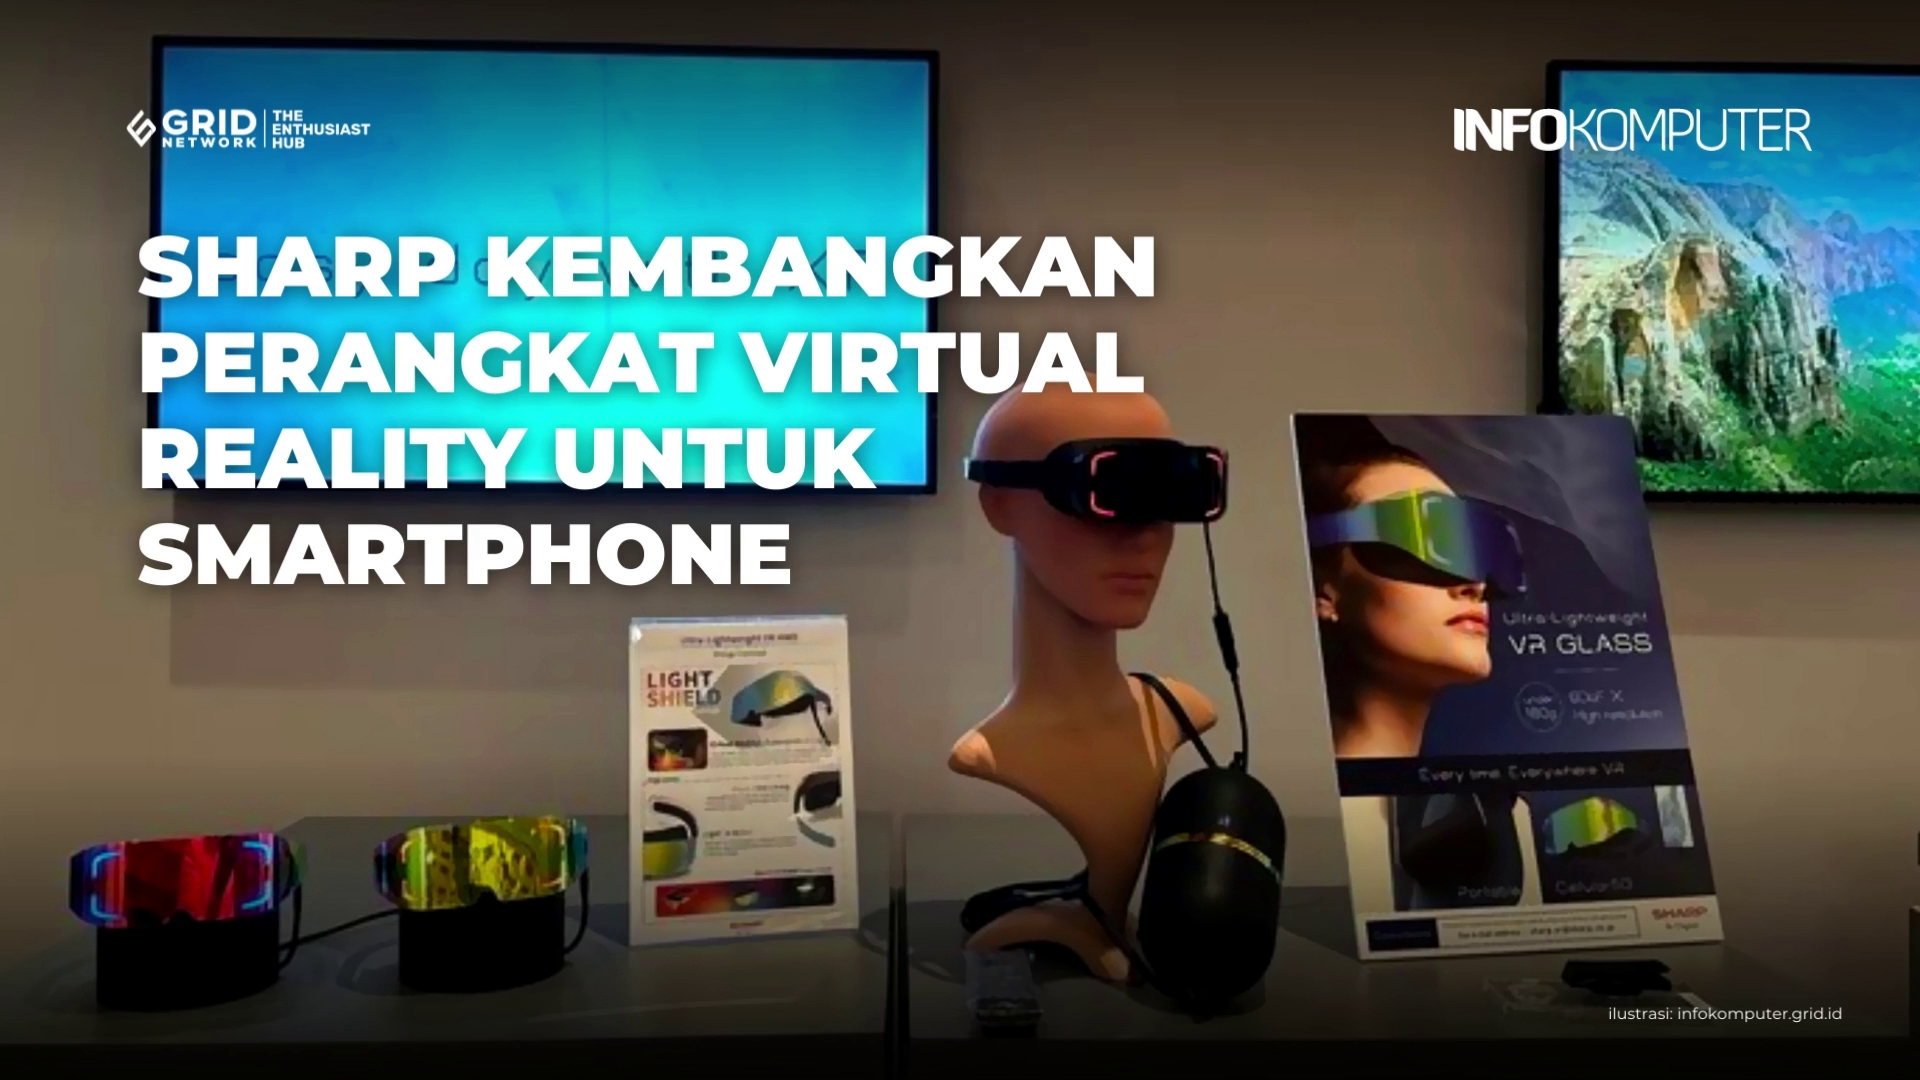 Sharp Sedang Kembangkan Perangkat Virtual Reality untuk Smartphone | Berita Teknologi